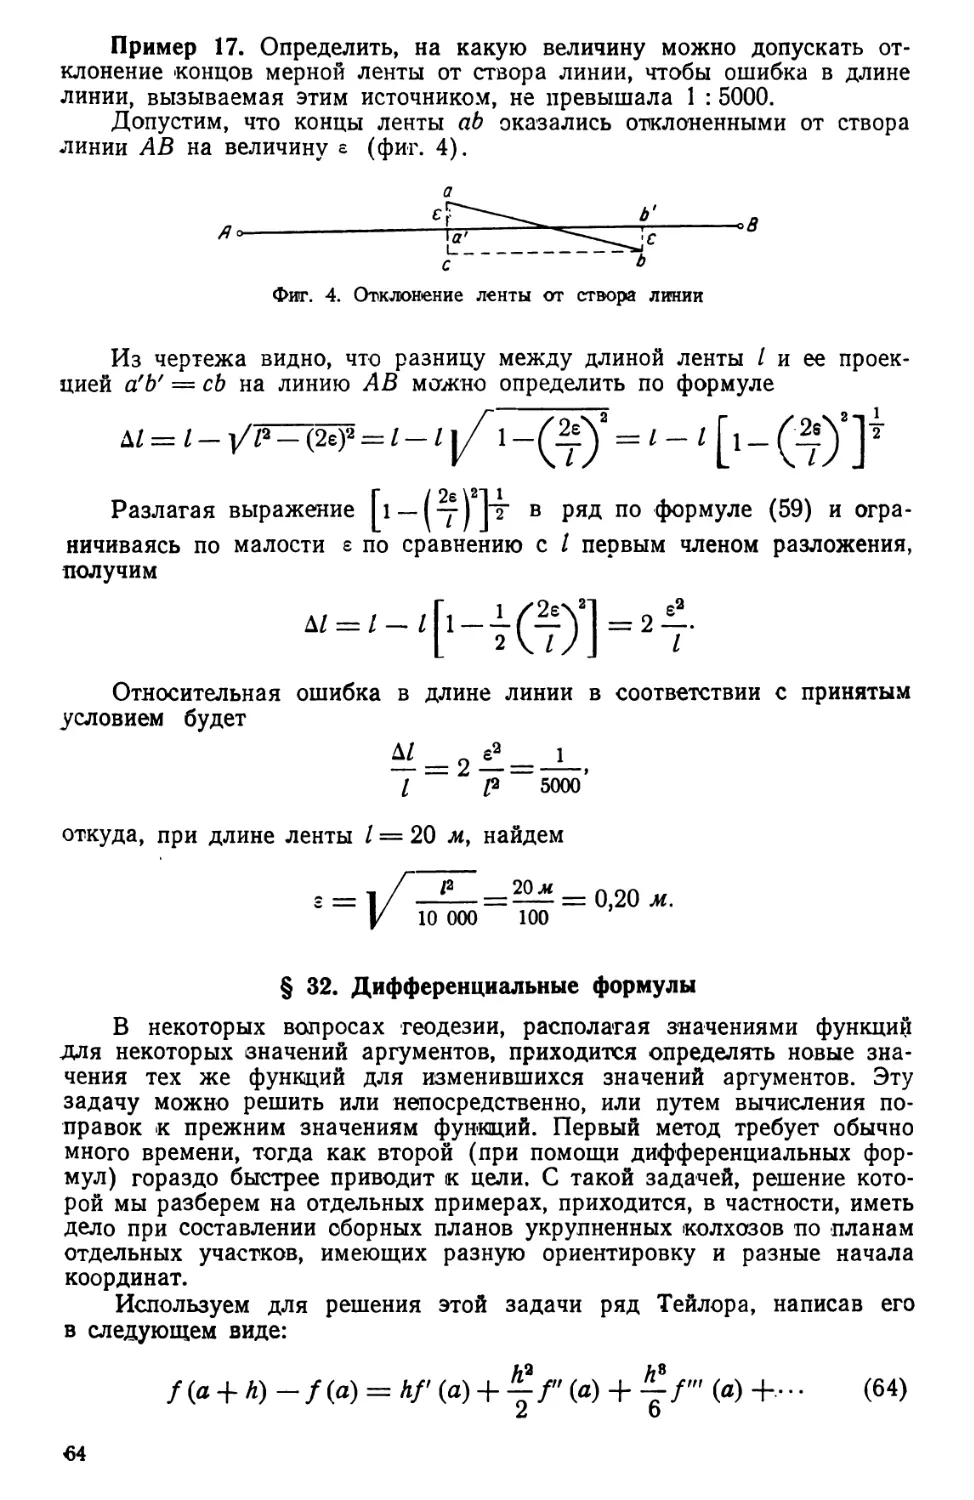 § 32. Дифференциальные формулы